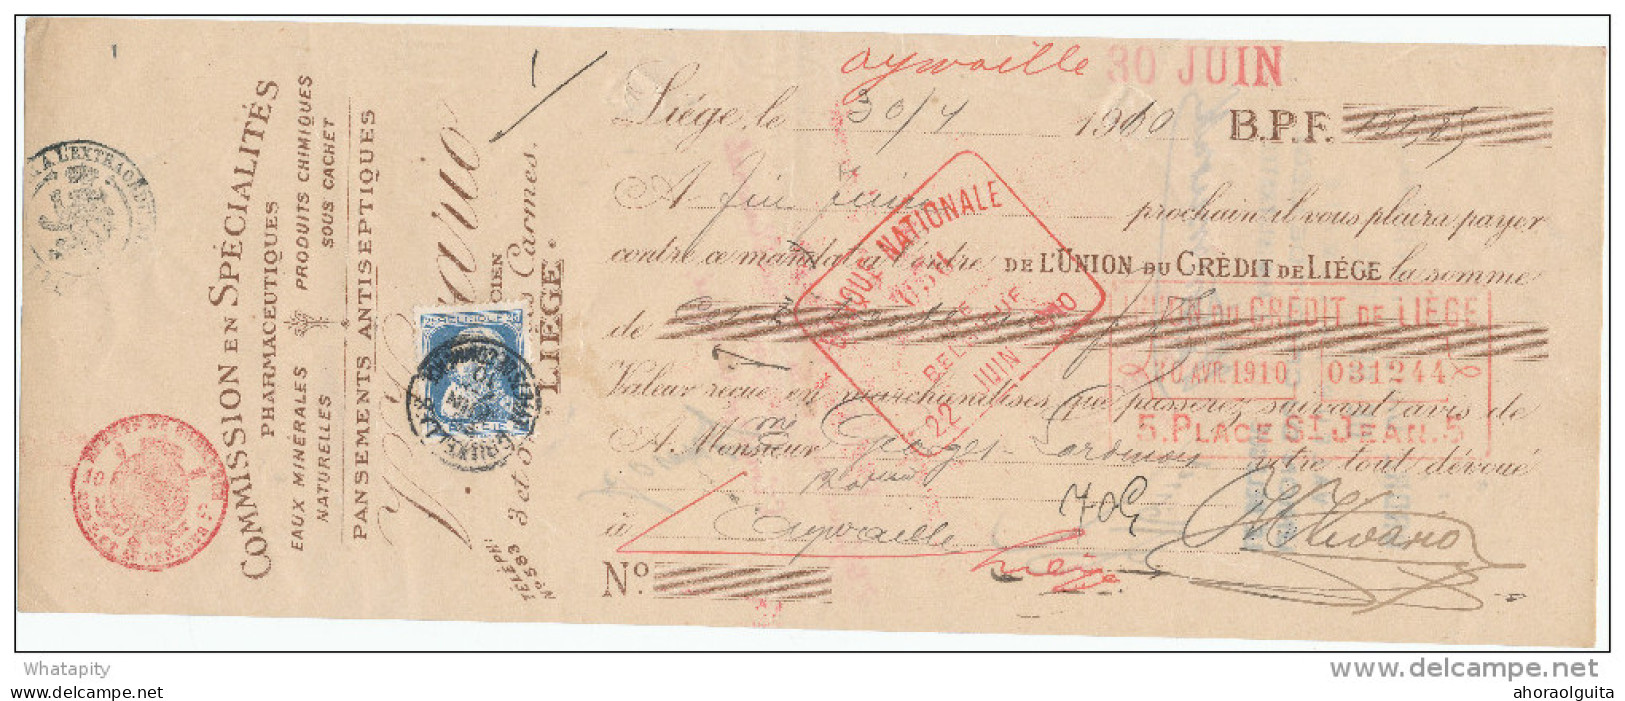 BELGIQUE - Document Financier Via Poste Belge 1910 - Spécialités En Pharmacie Vivario à LIEGE  -- VV429 - Apotheek